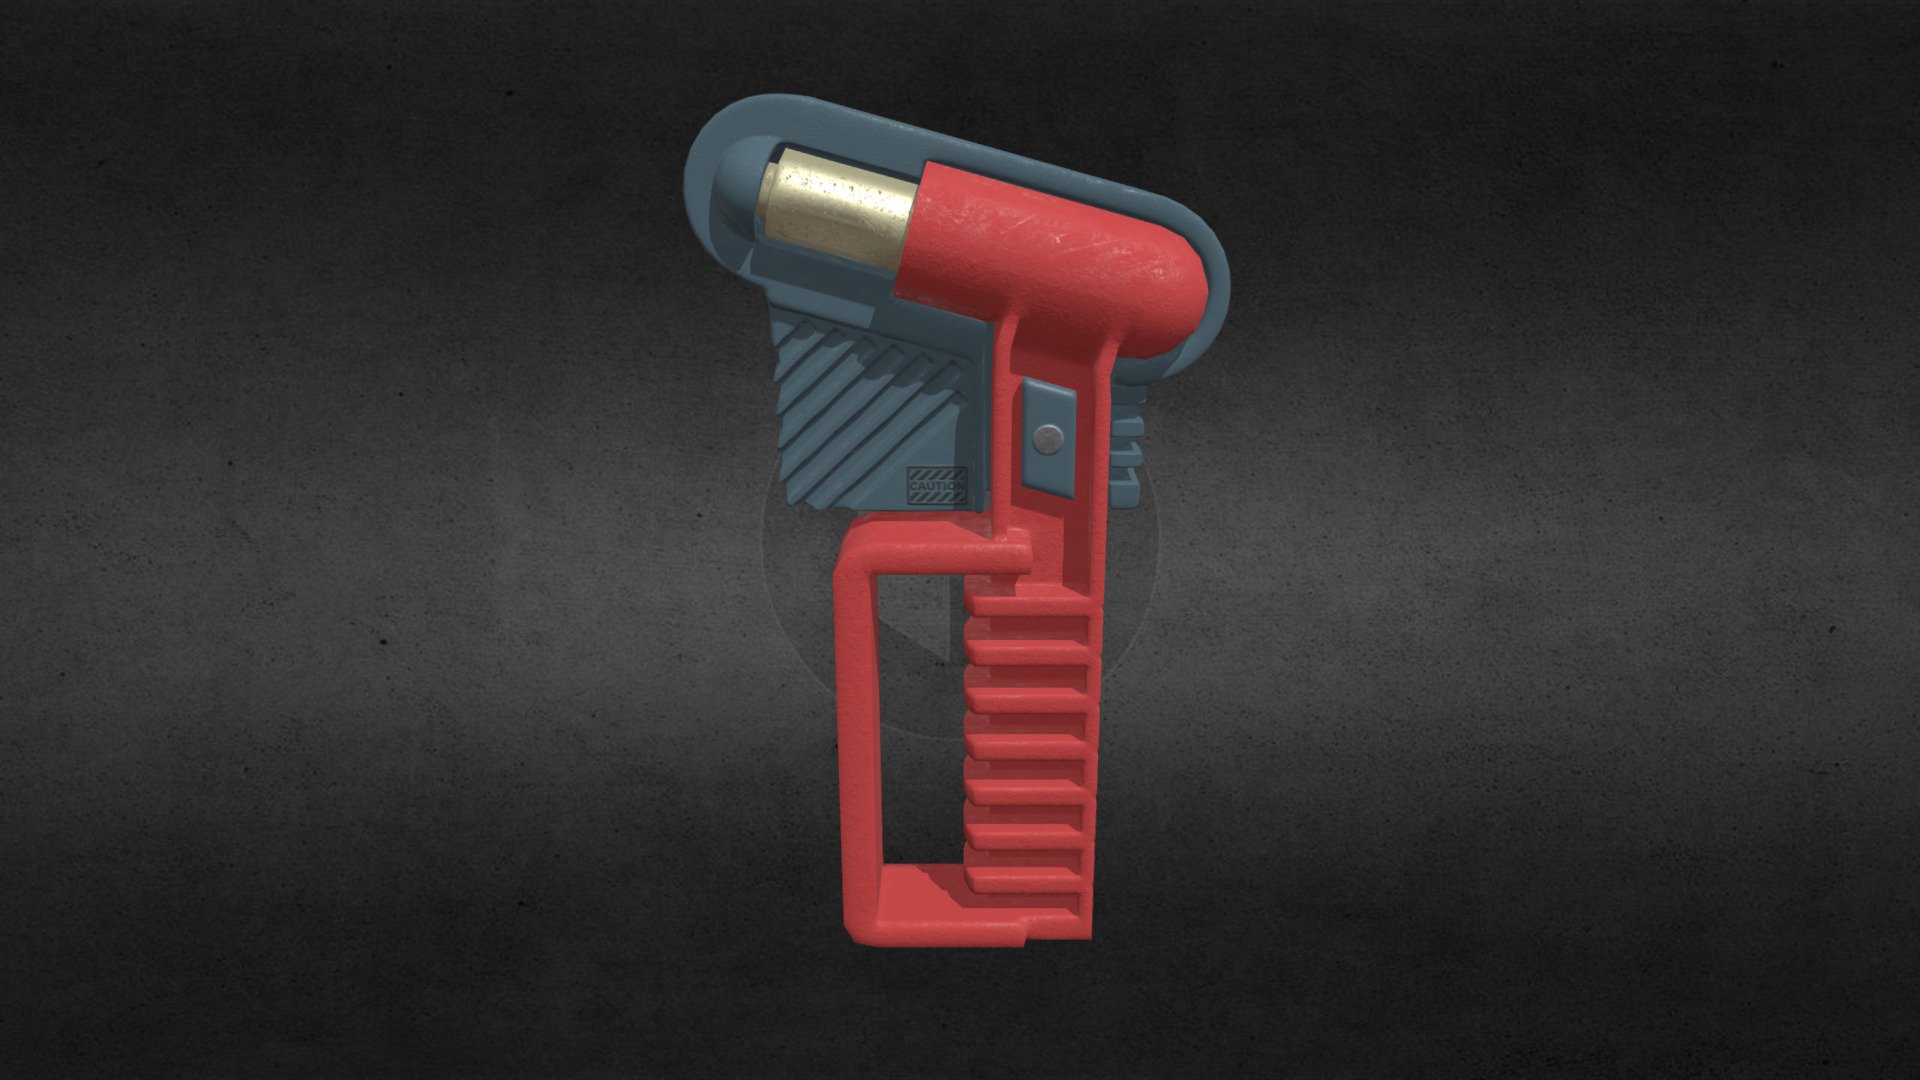 Lifehammer - Safety hammer - Nothammer - Sicherheitshammer | 3D model